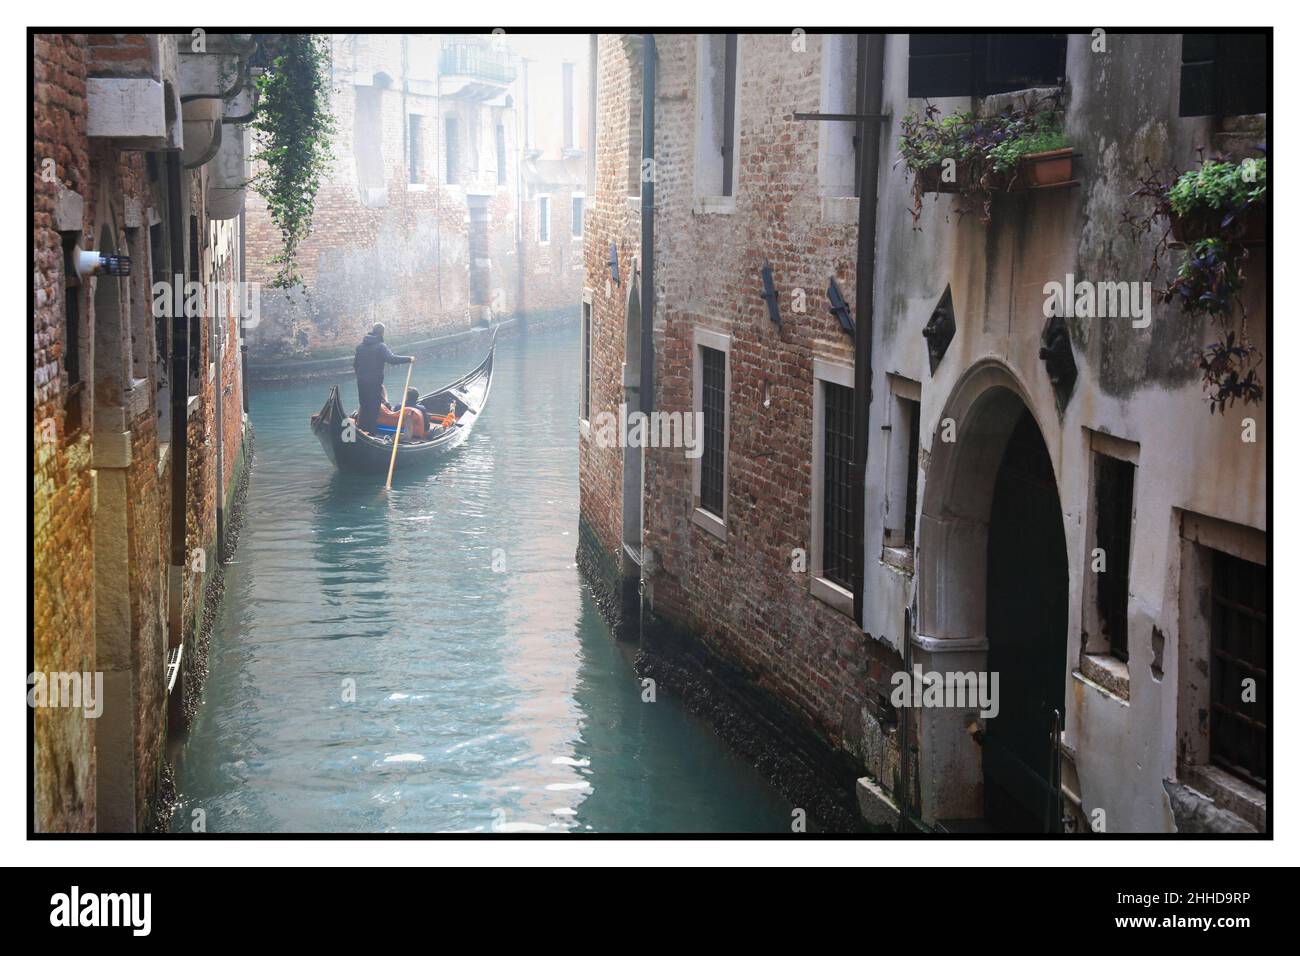 Romantique canaux vénitiens.Vieilles rues étroites de Venise.Trajet en gondole.Photo rétro aux tons sépia.Italie Banque D'Images